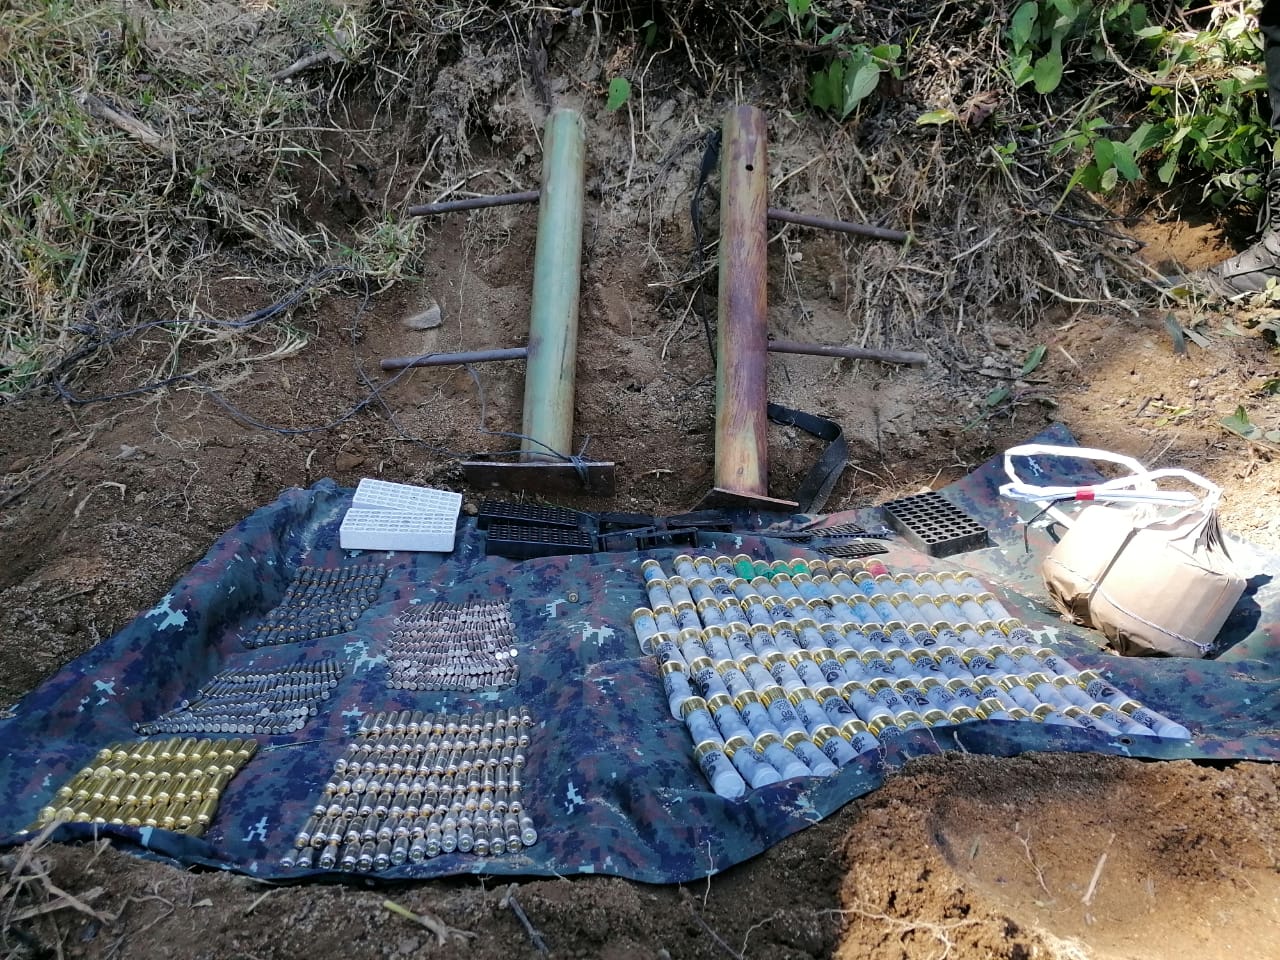 Efectivos del Ejército de Guatemala localizaron más de 500 municiones en una comunidad de Santa Catarina Ixtahuacán, Sololá. (Foto Prensa Libre: Ejército de Guatemala)